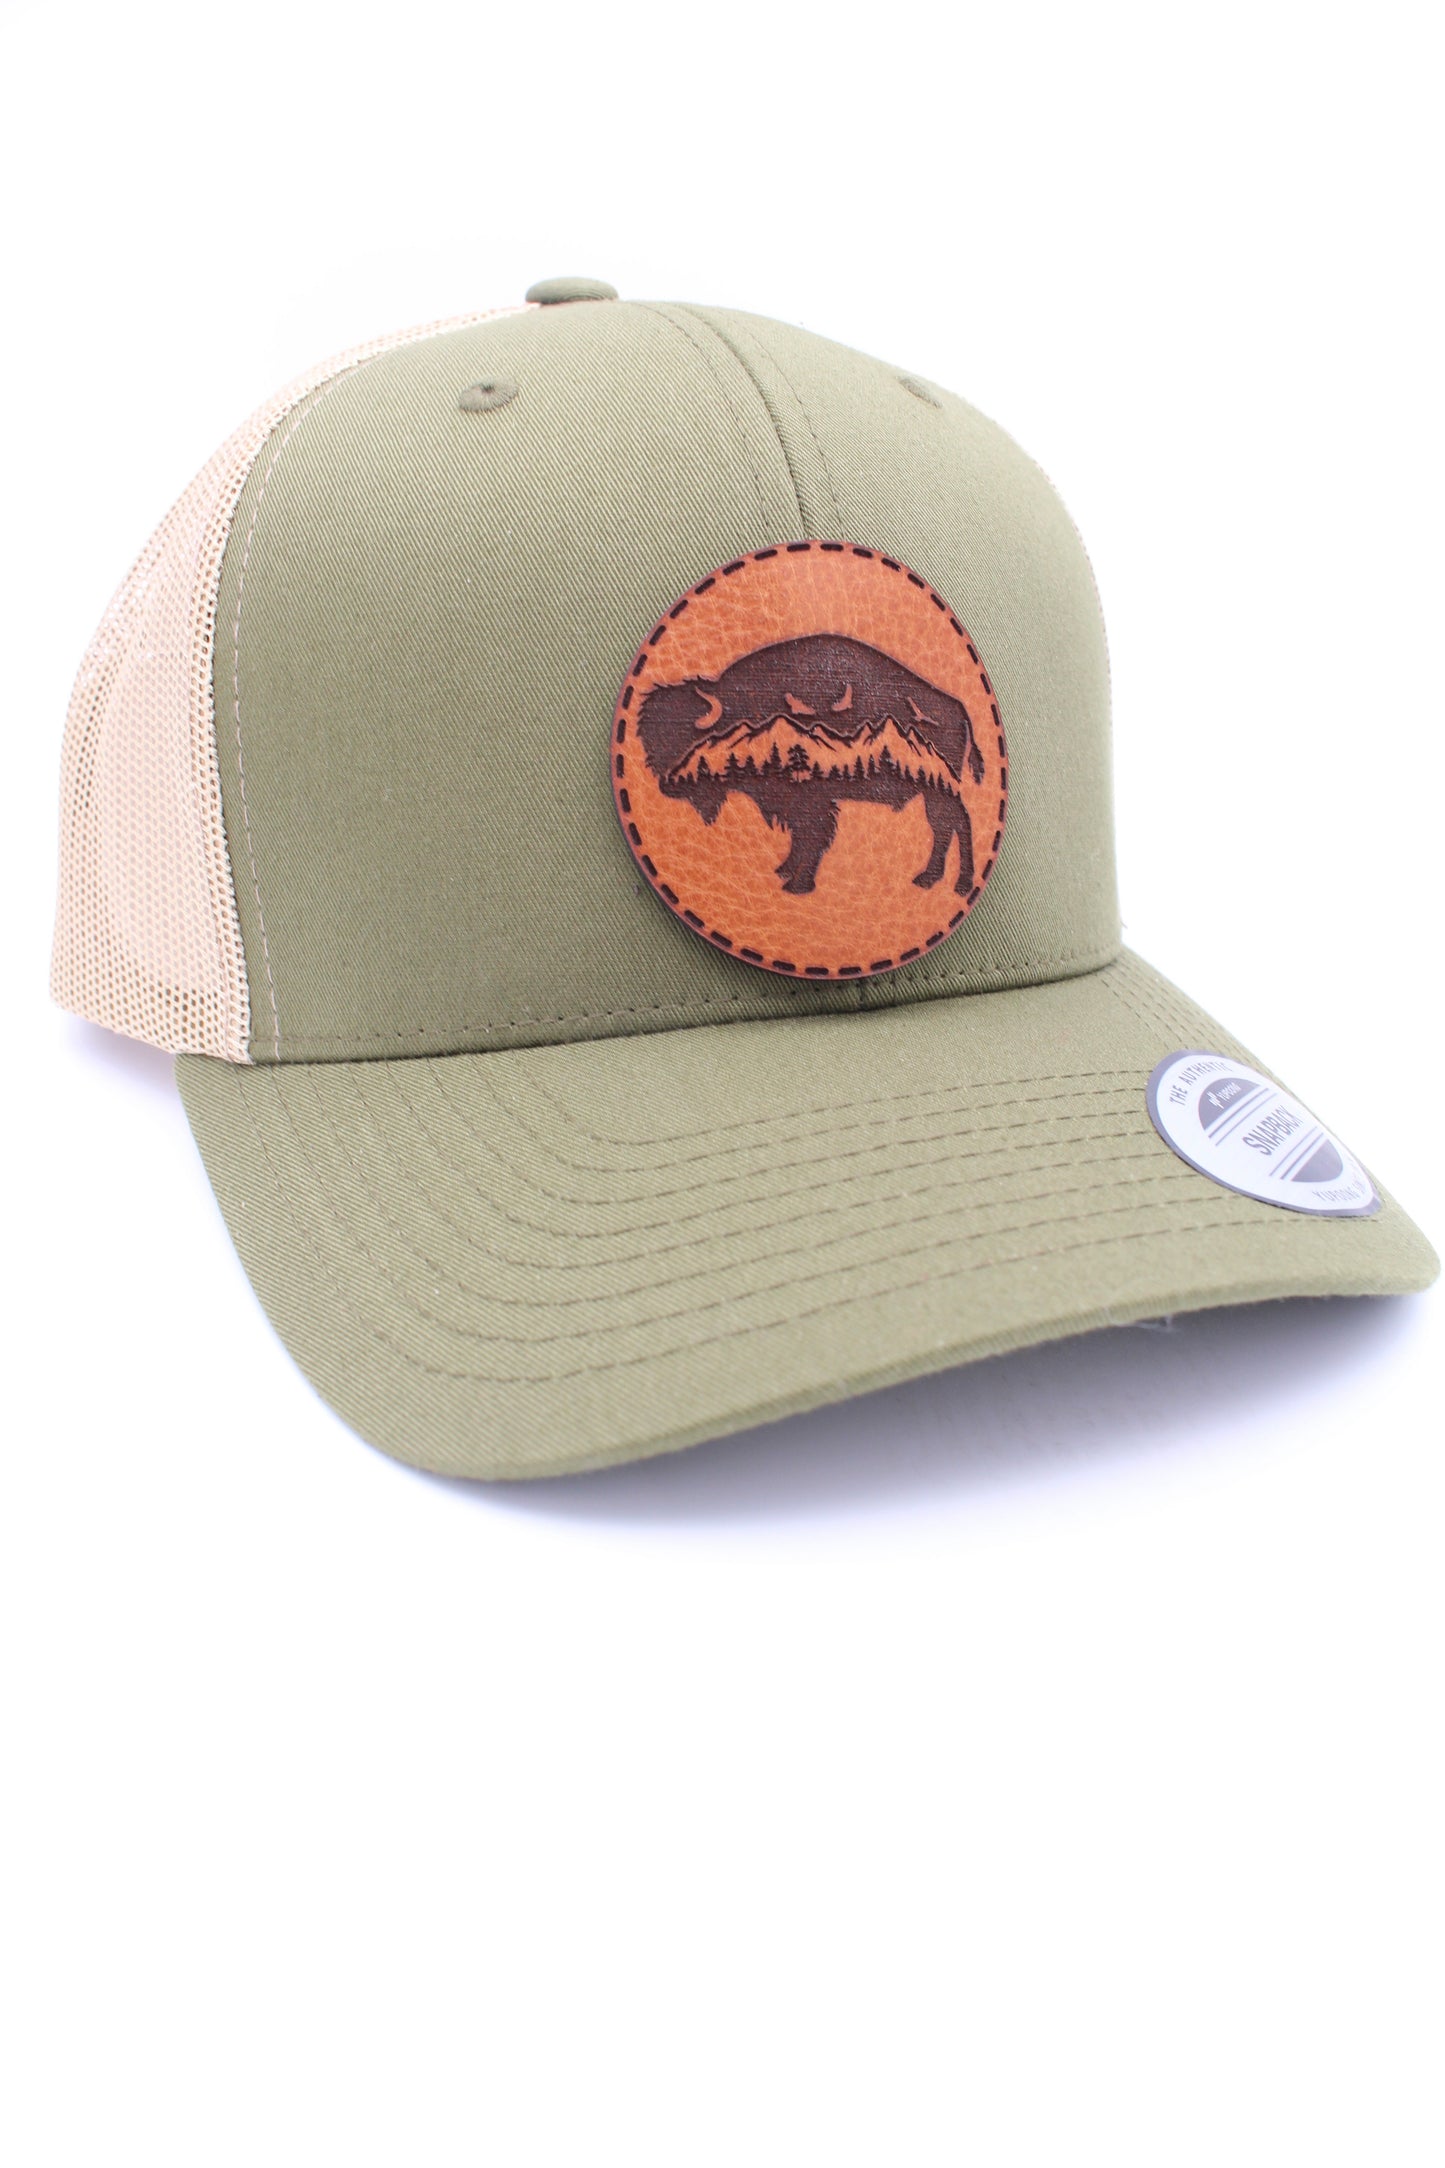 Bison Hat | Outdoors Trucker Hat | Nature Art Trucker Hat